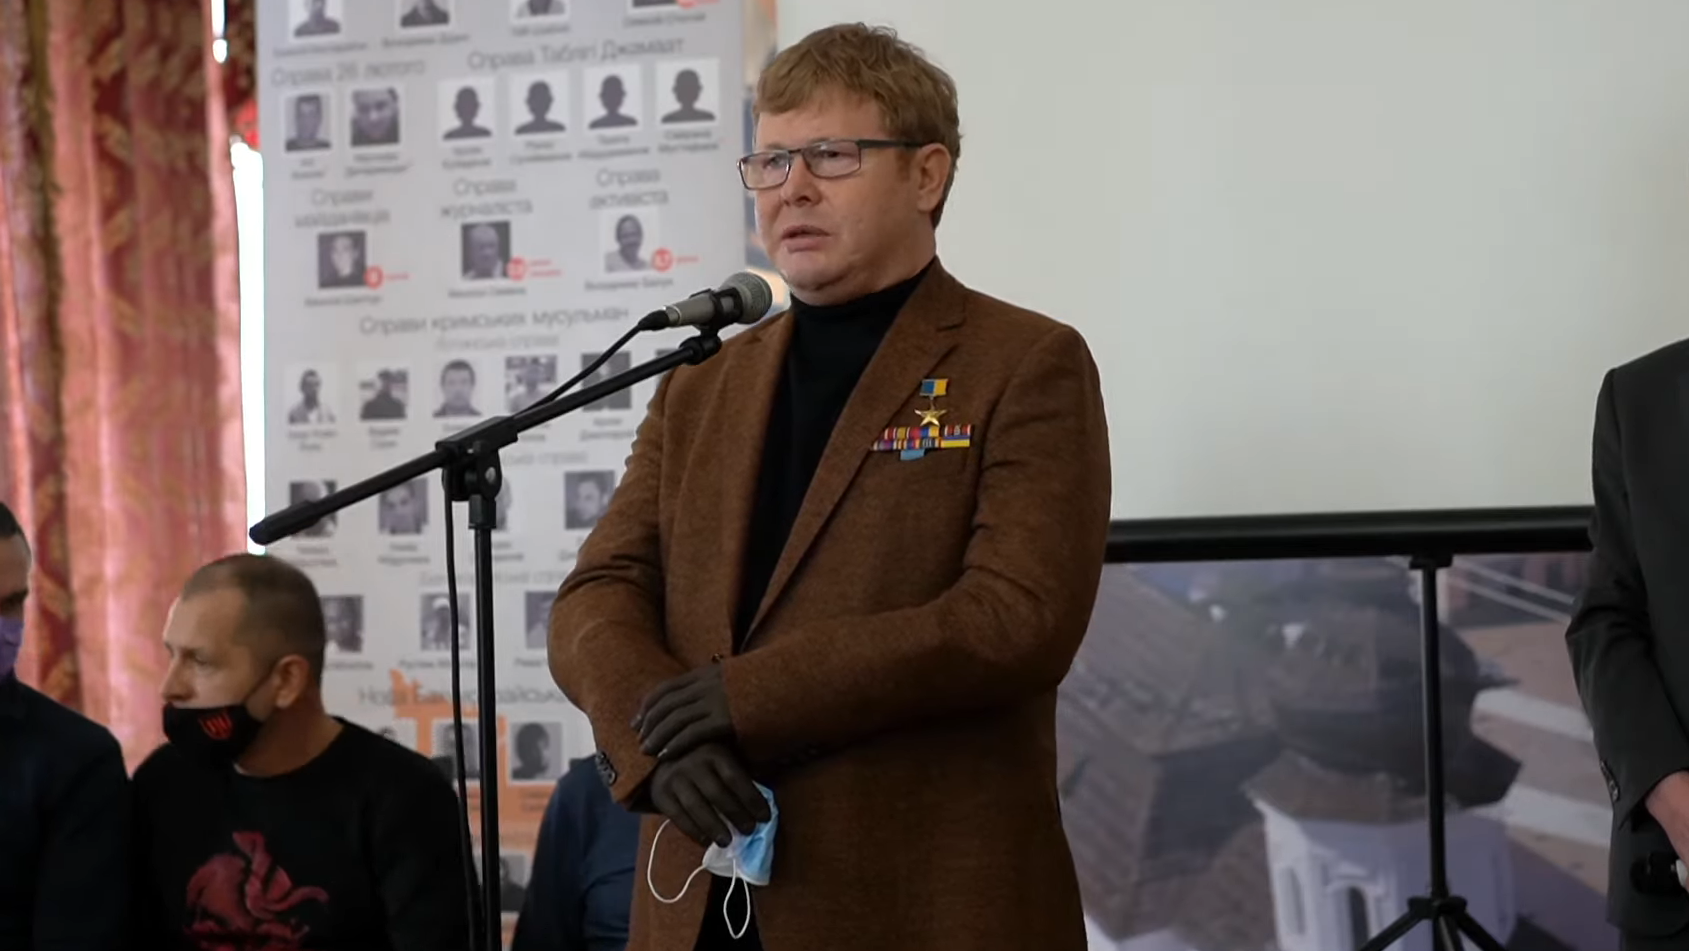 Владимир Жемчугов выступает на презентации платформы "Освобождение пленных" в Киеве